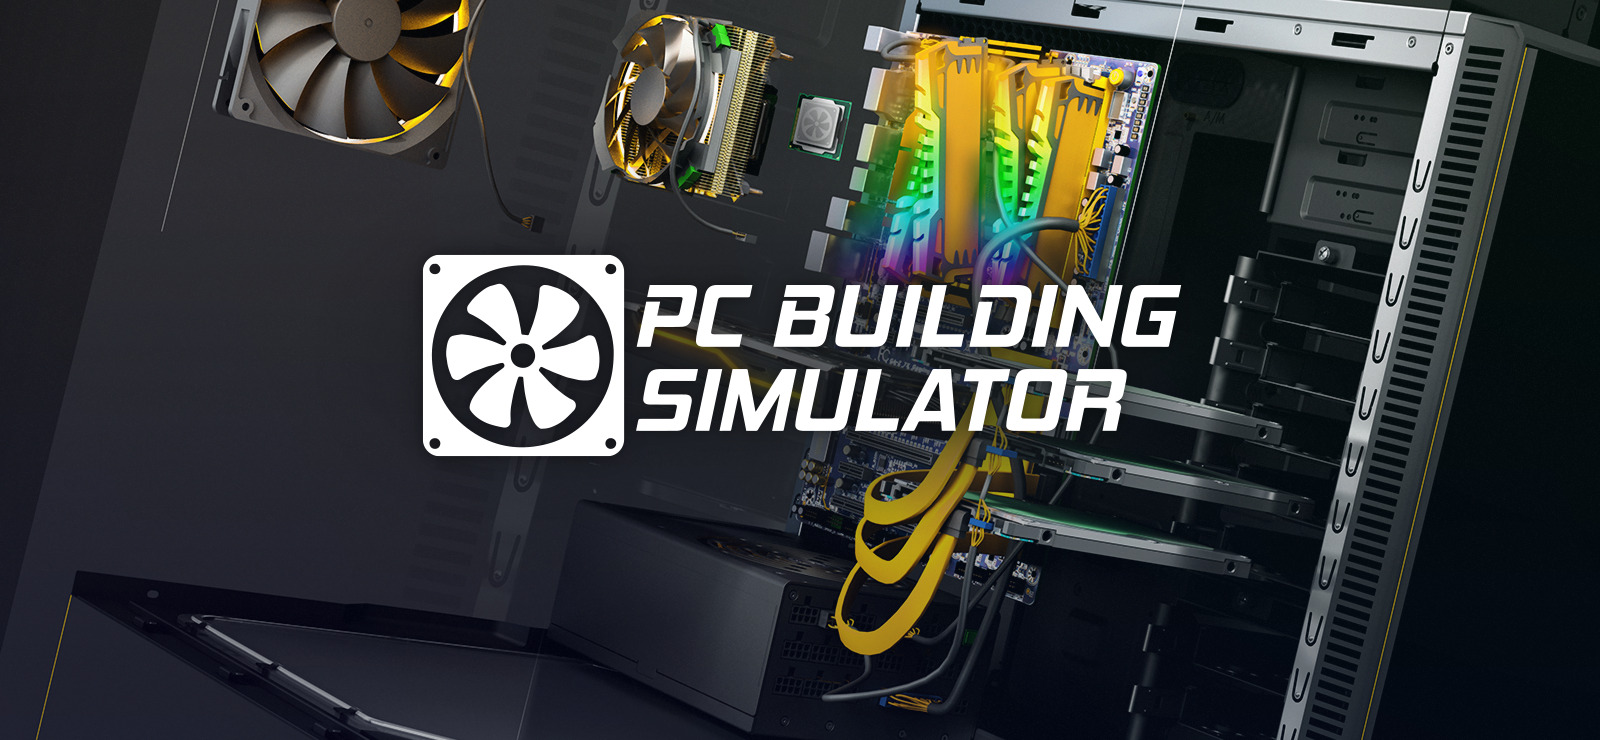 Building Simulator 2 Codes